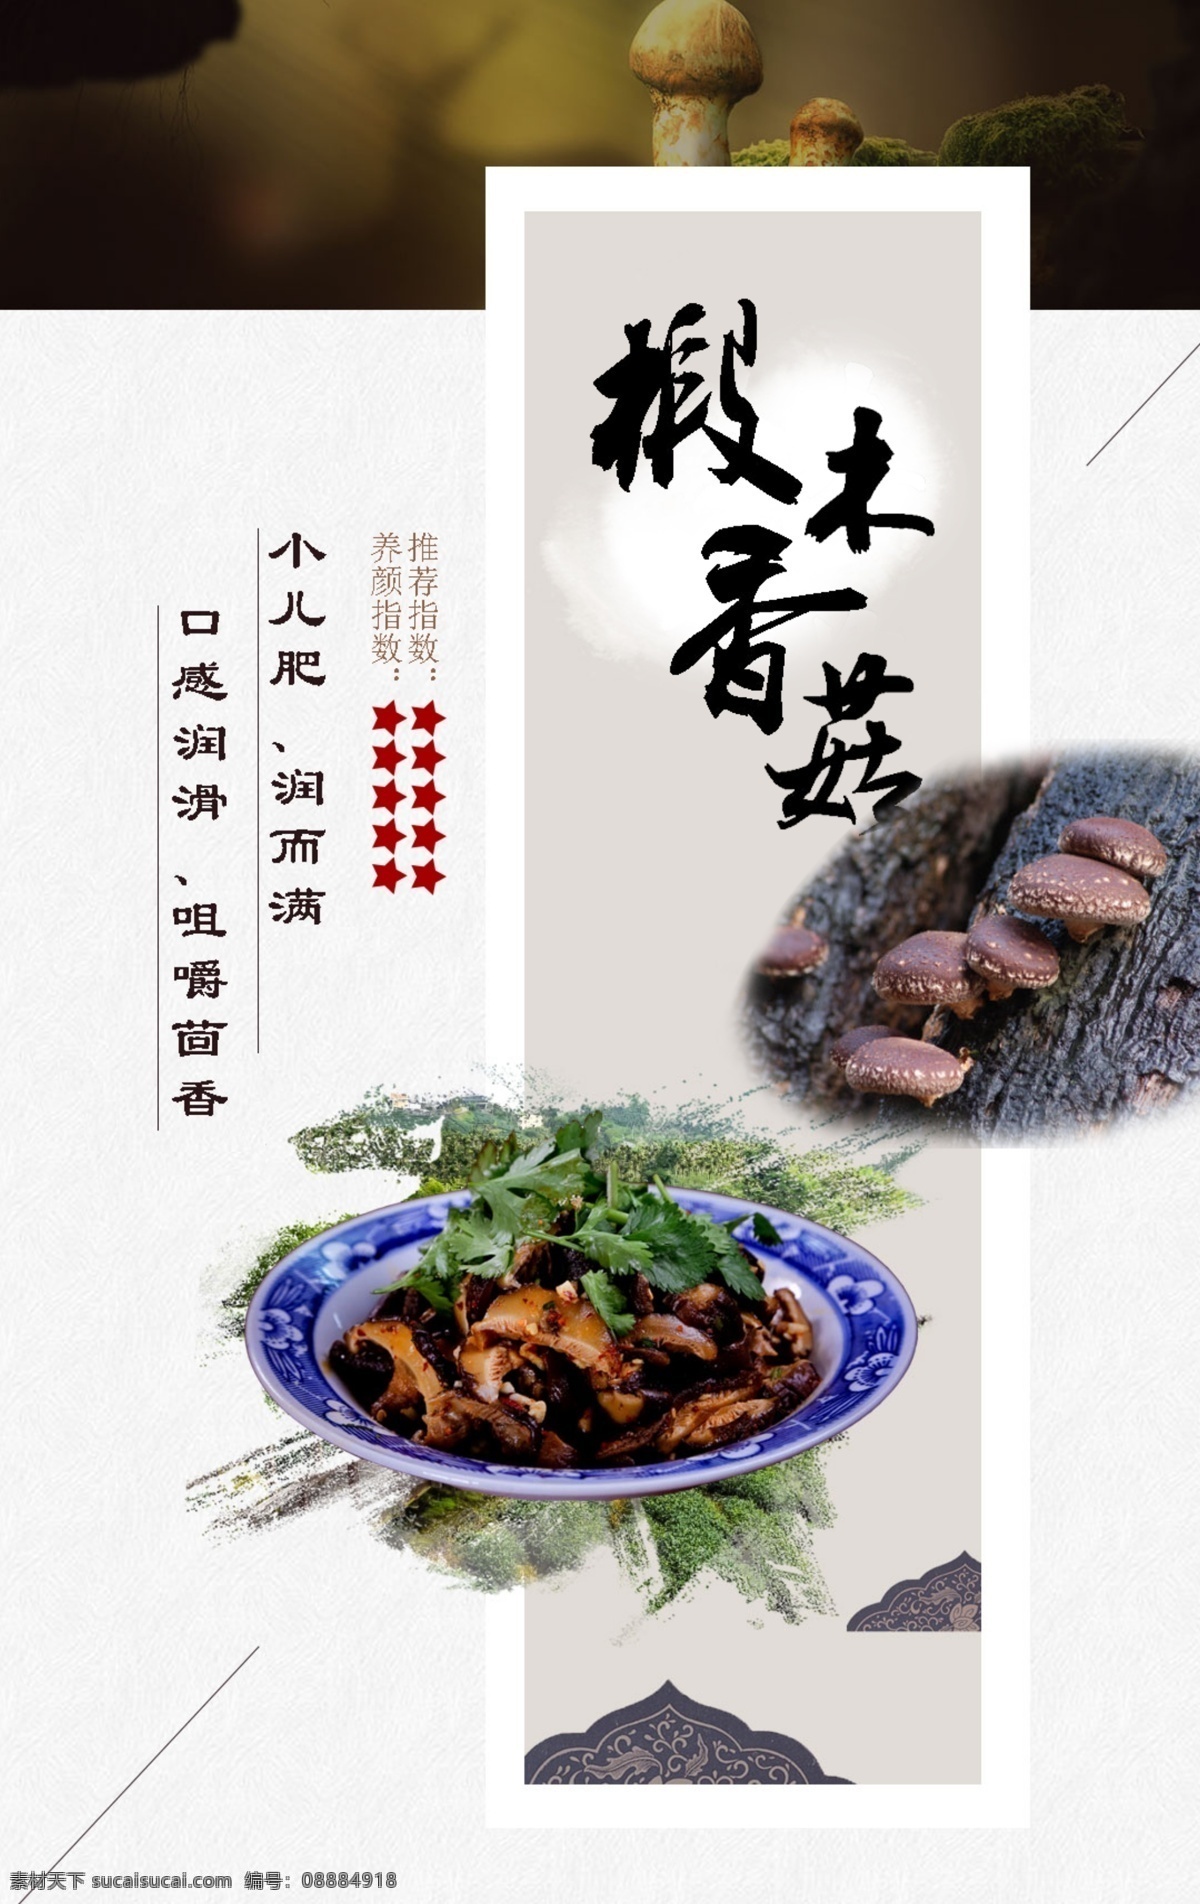 大山 山珍野味 中国风 手机端海报 美食 食品 菜肴 舌尖上的美食 舌尖上的中国 原生态 健康 养生 椴木 花菇